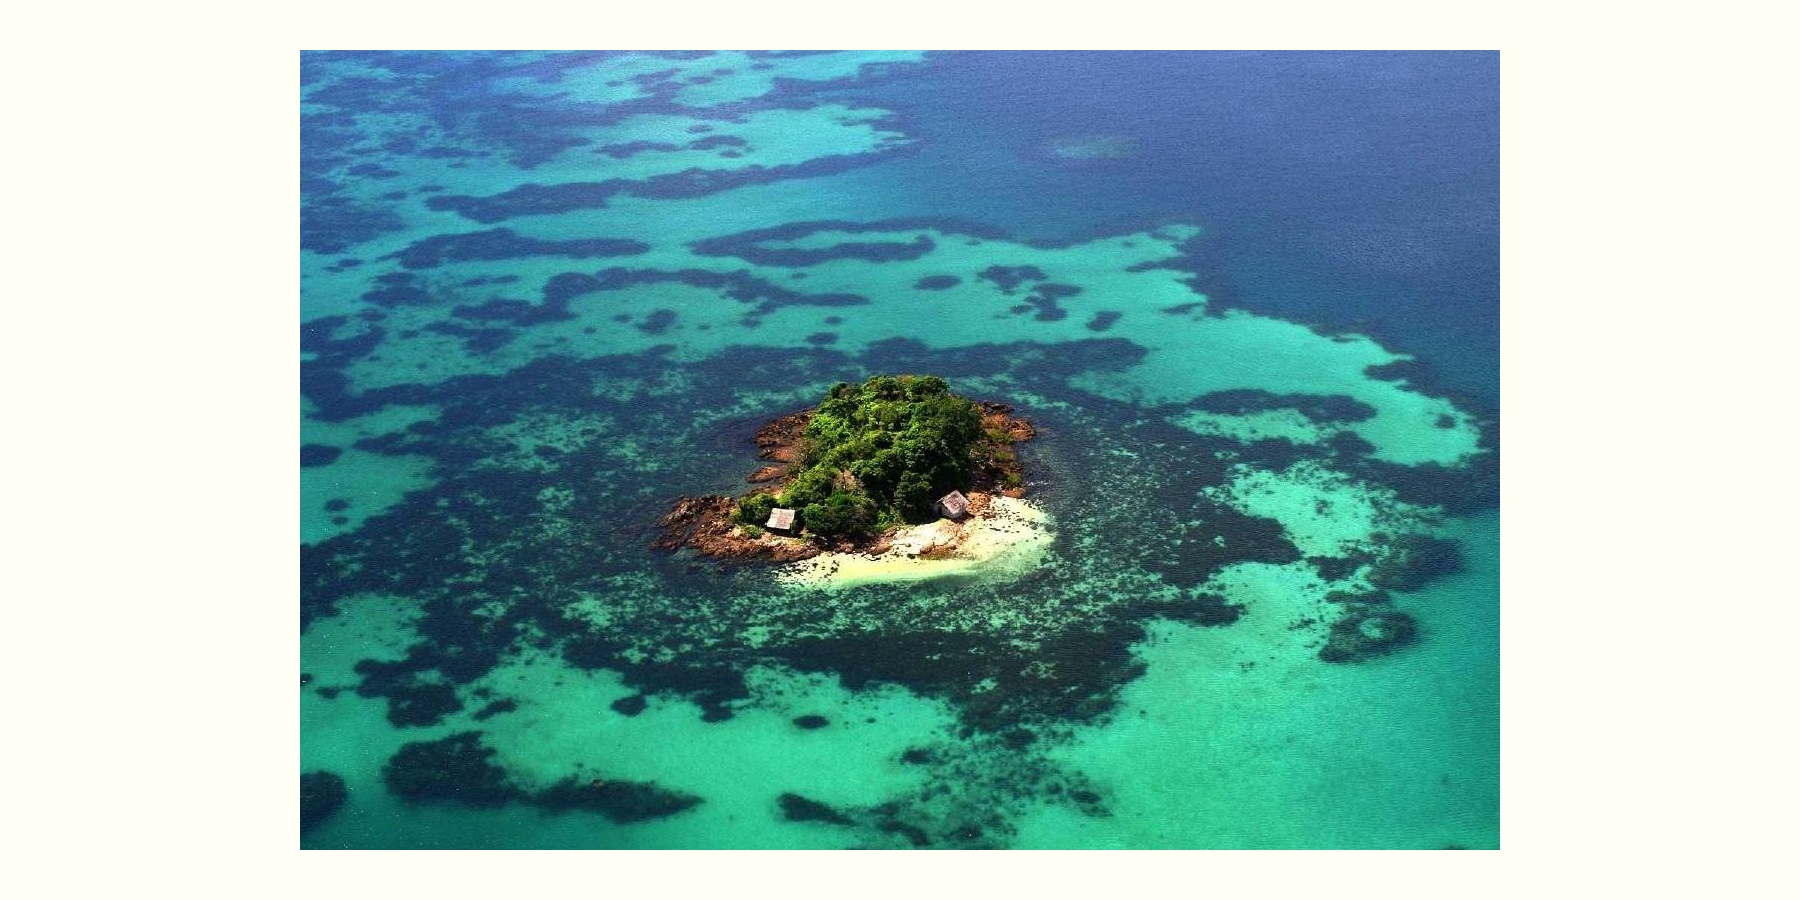 パラワン諸島タイタイに浮かぶ島タグブロ(タブロ)島  (Tagbulo Island, Taytay, Palawan)